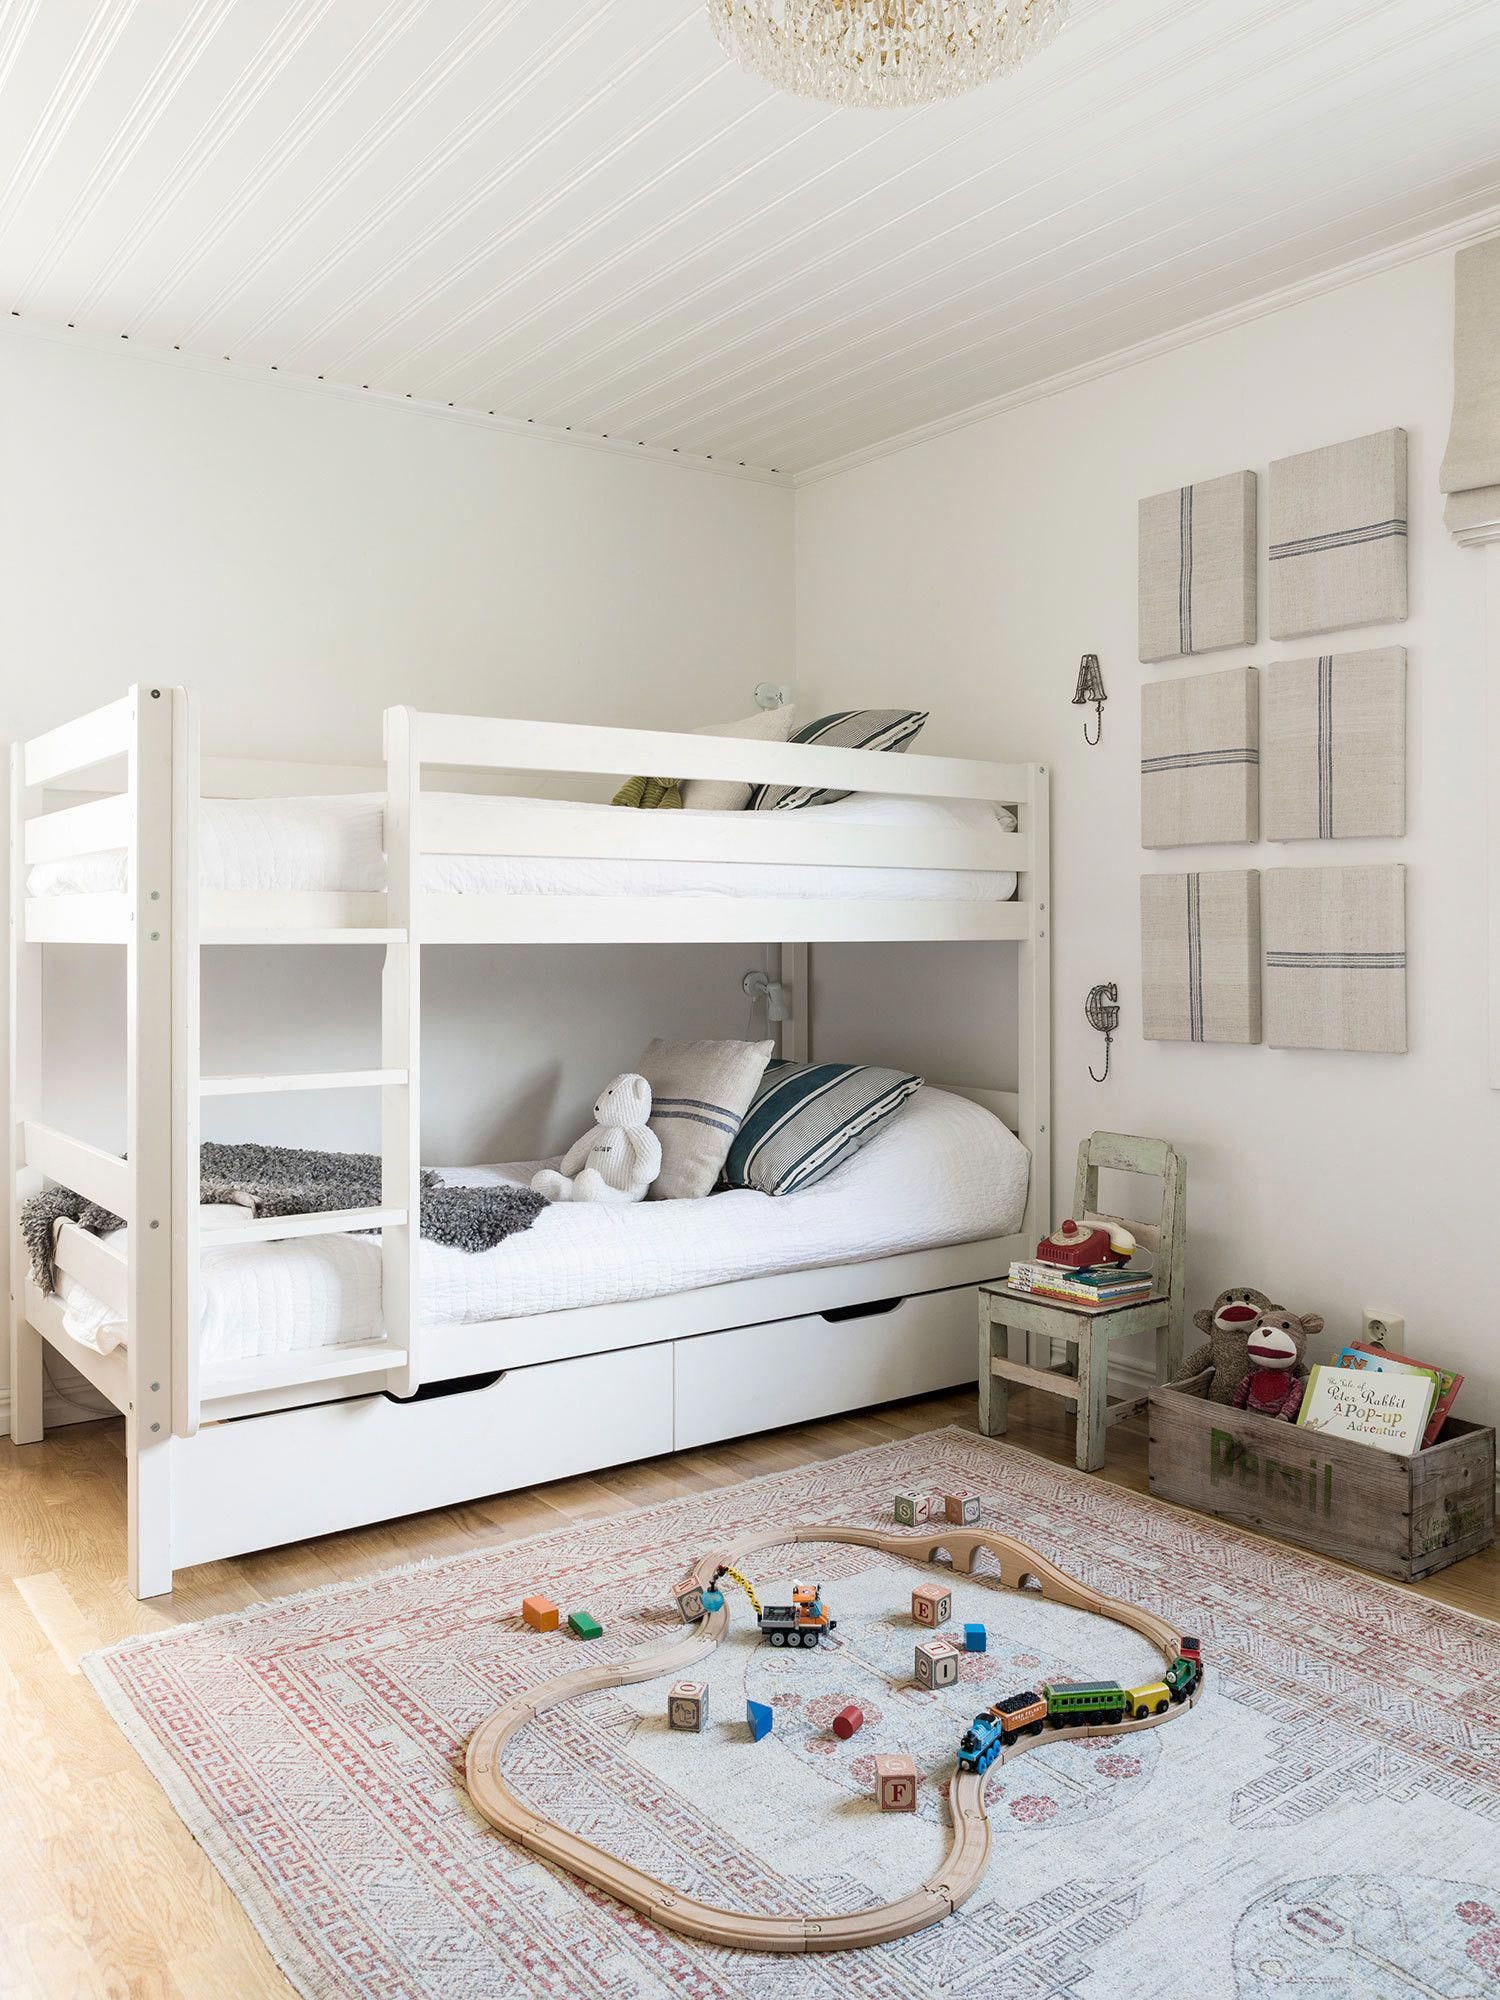 Кровать с 2 спальными местами детская